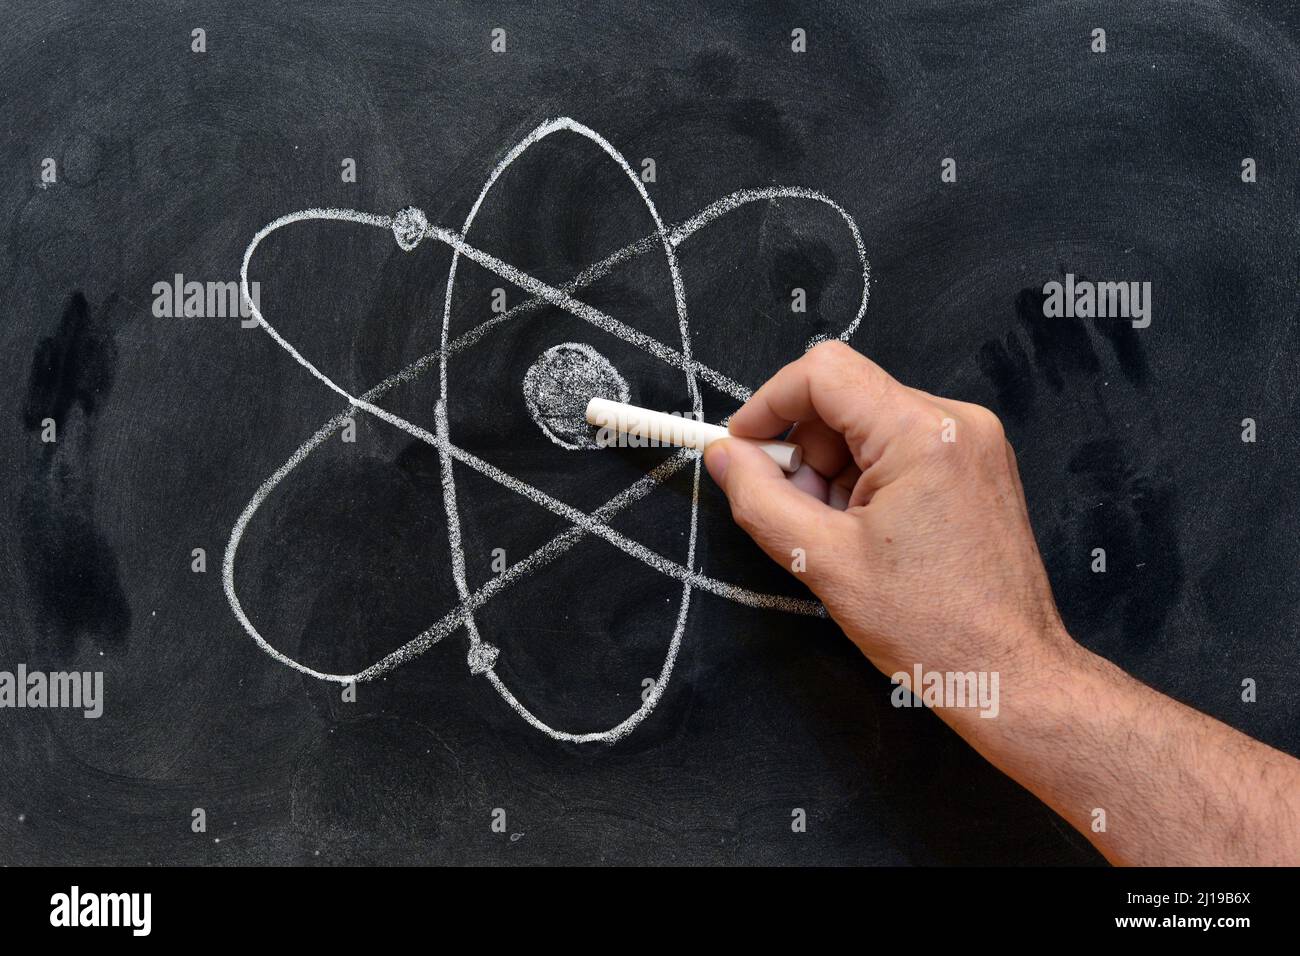 Mano señalando el símbolo del átomo dibujado con tiza en una pizarra Stock Photo